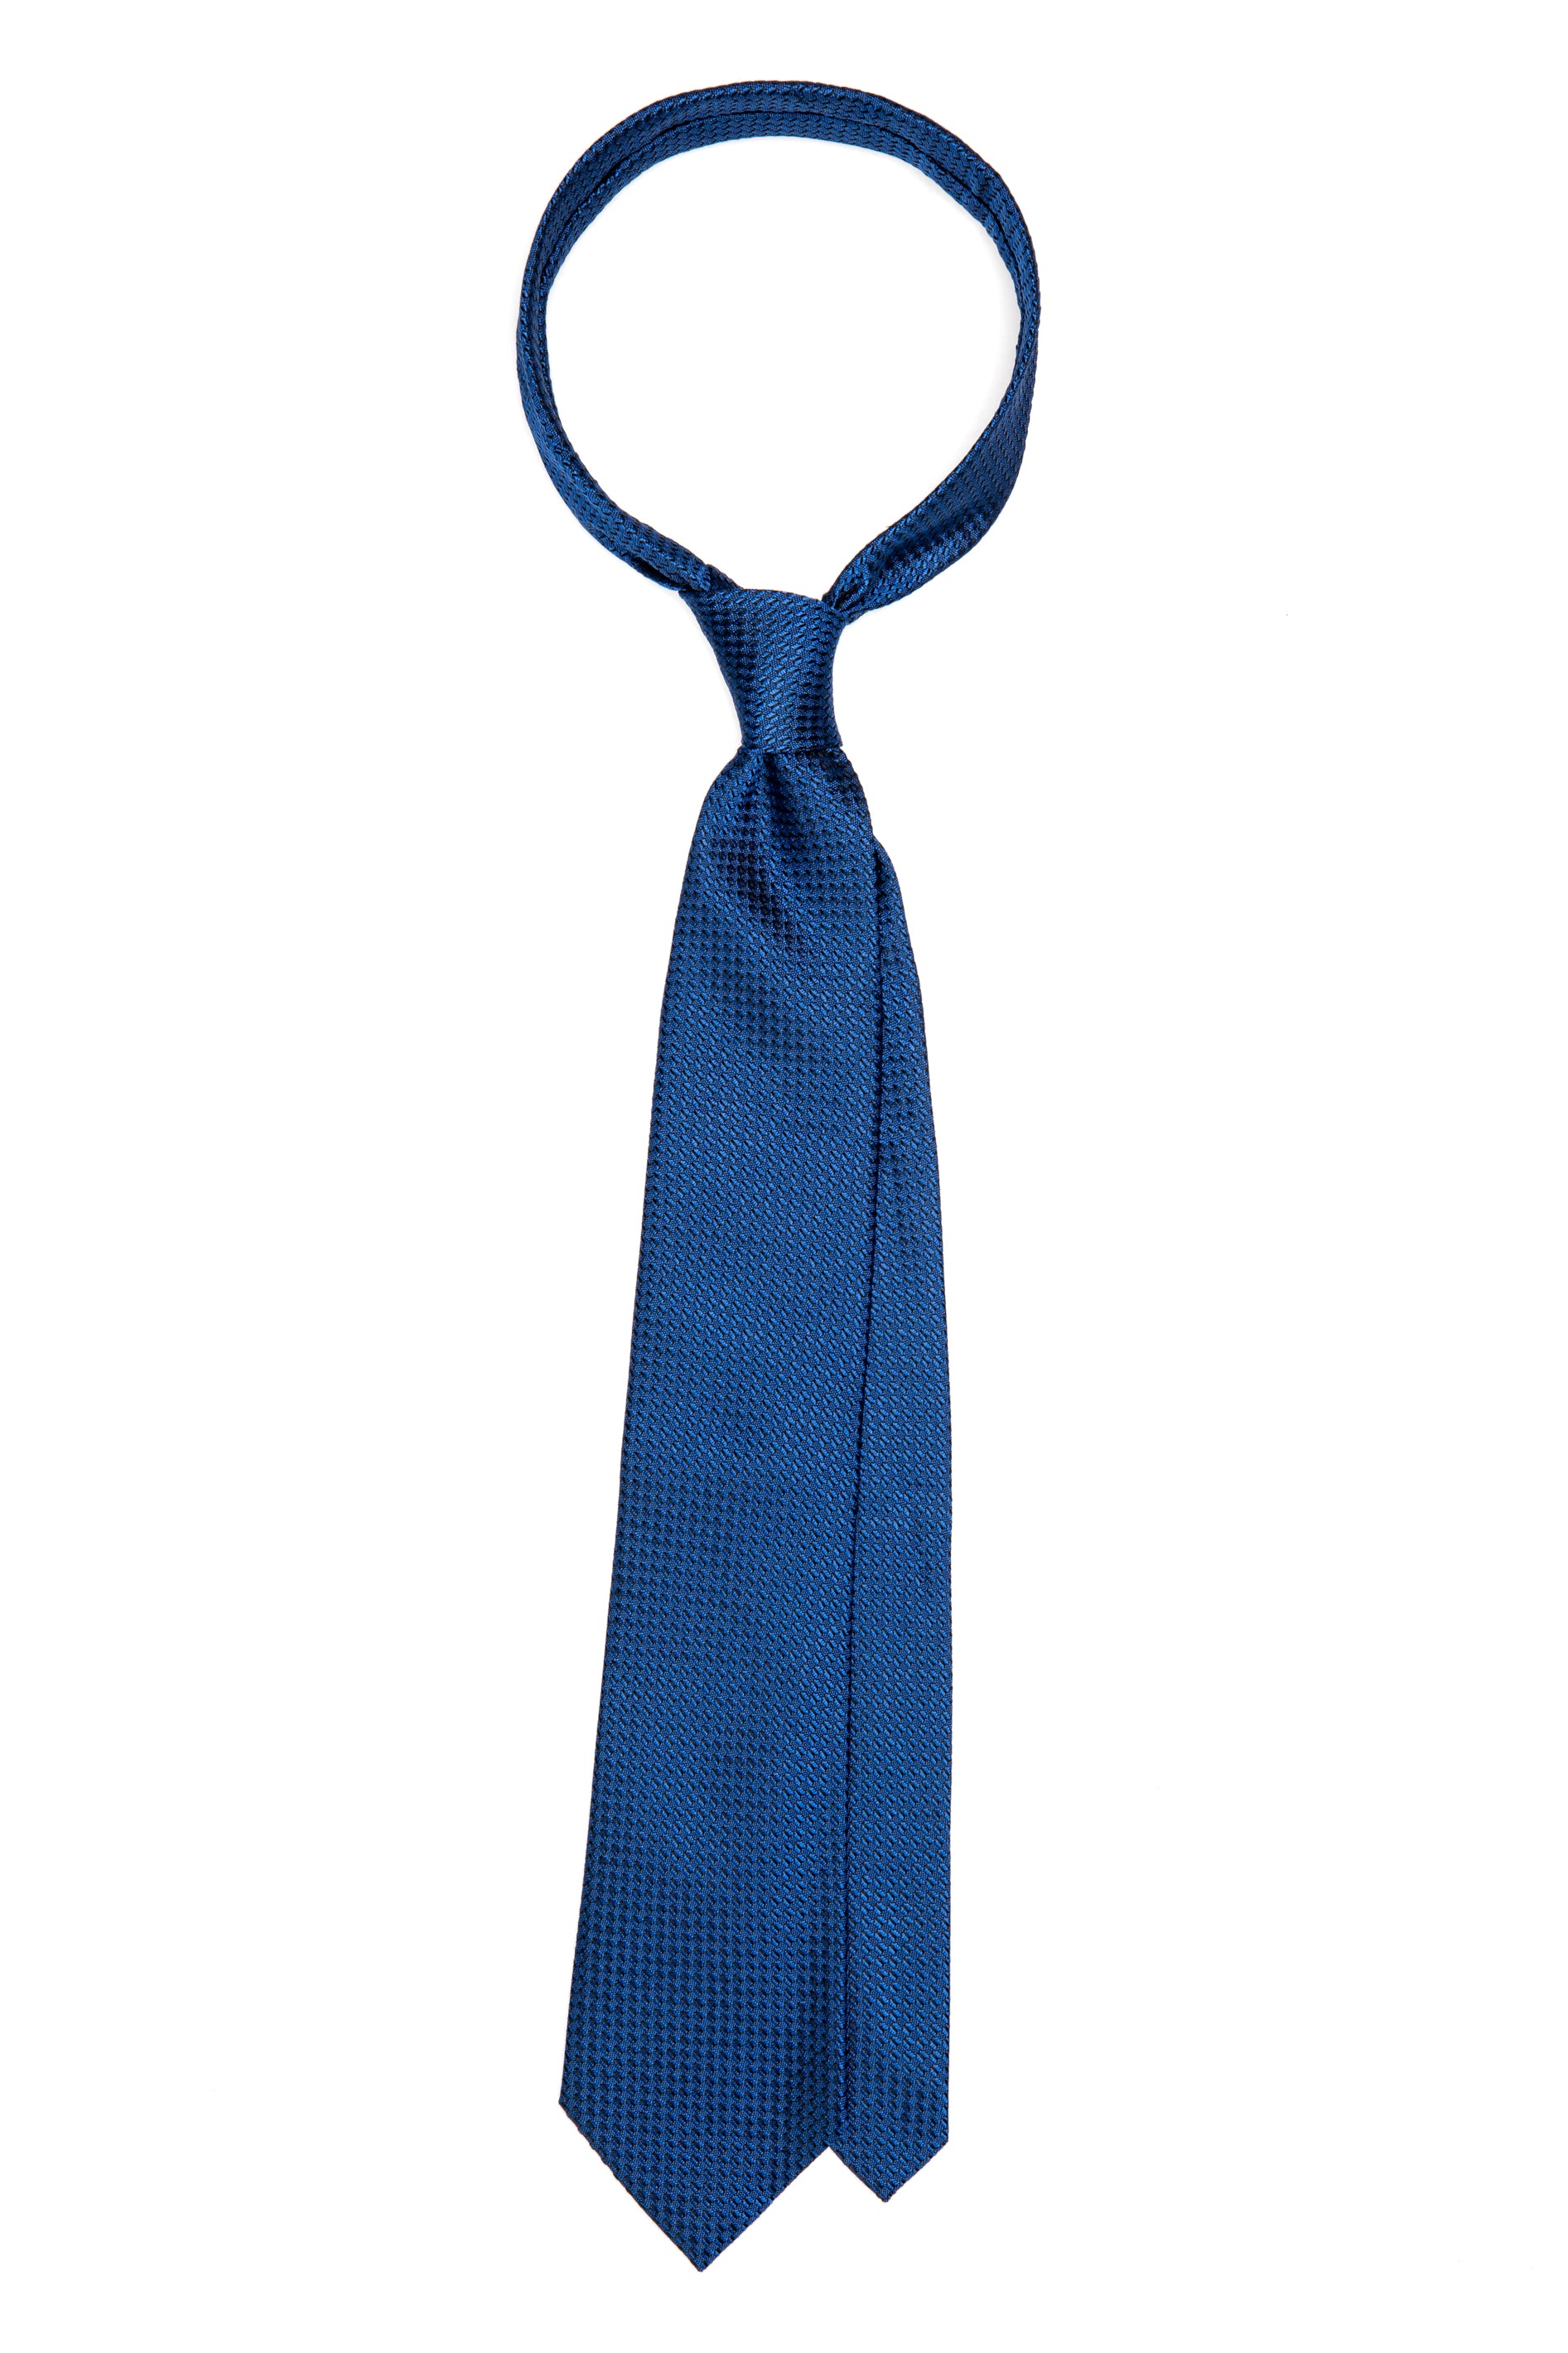 Textured navy silk tie